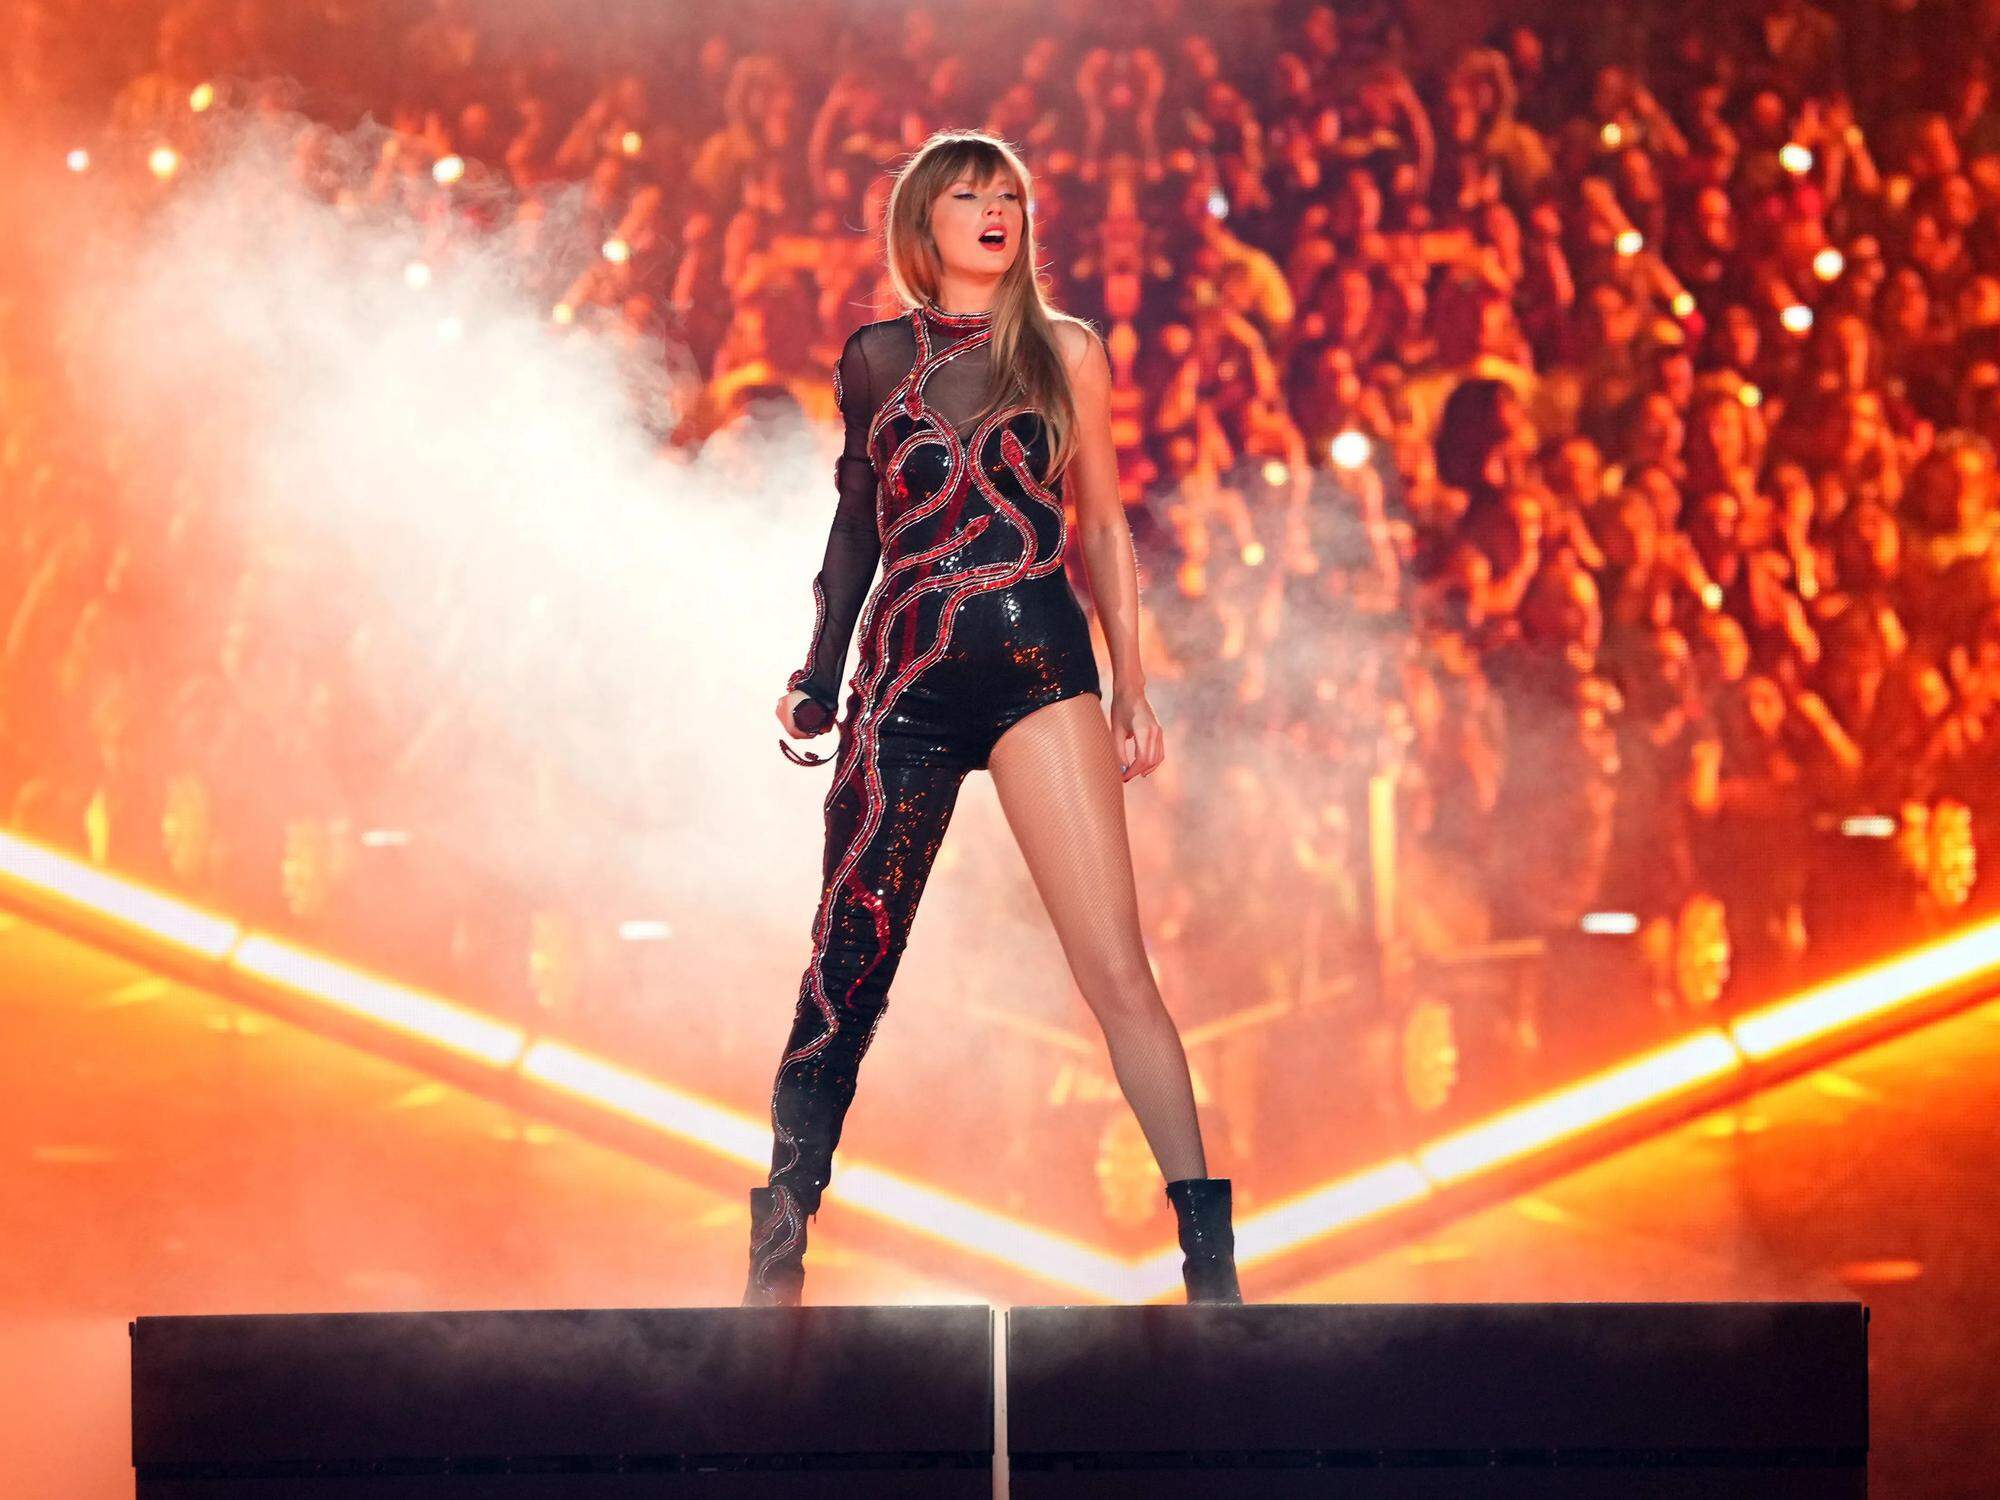 Taylor Swift usa roupas das cores da bandeira do Brasil em shows